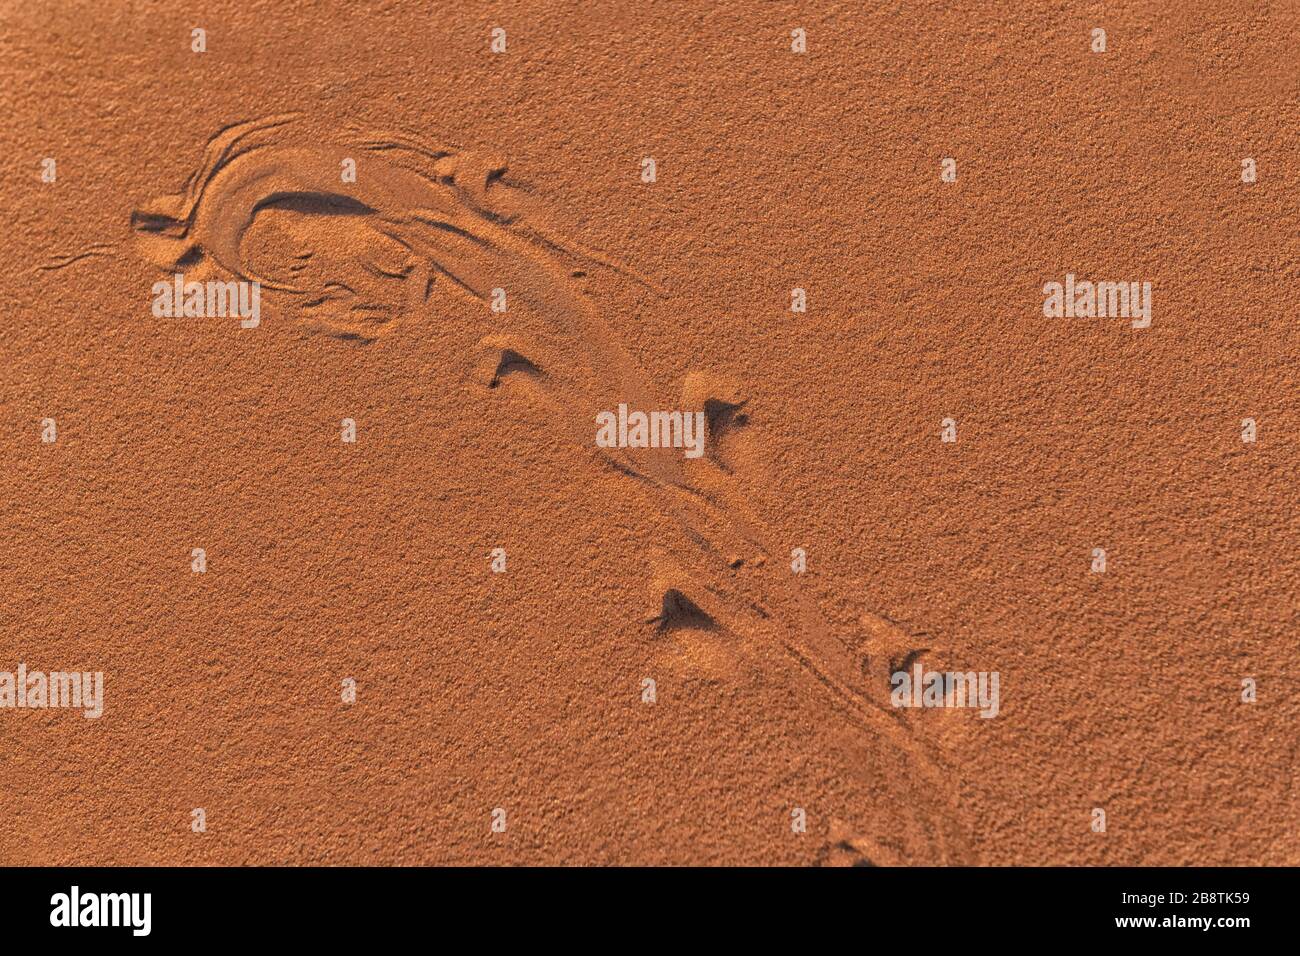 Fußabdrücke, Spuren eines Wüstensandfisches (Scincus, gewöhnlicher Skink) an den Erg Chebbi Sanddünen in Merzouga, Marokko Stockfoto